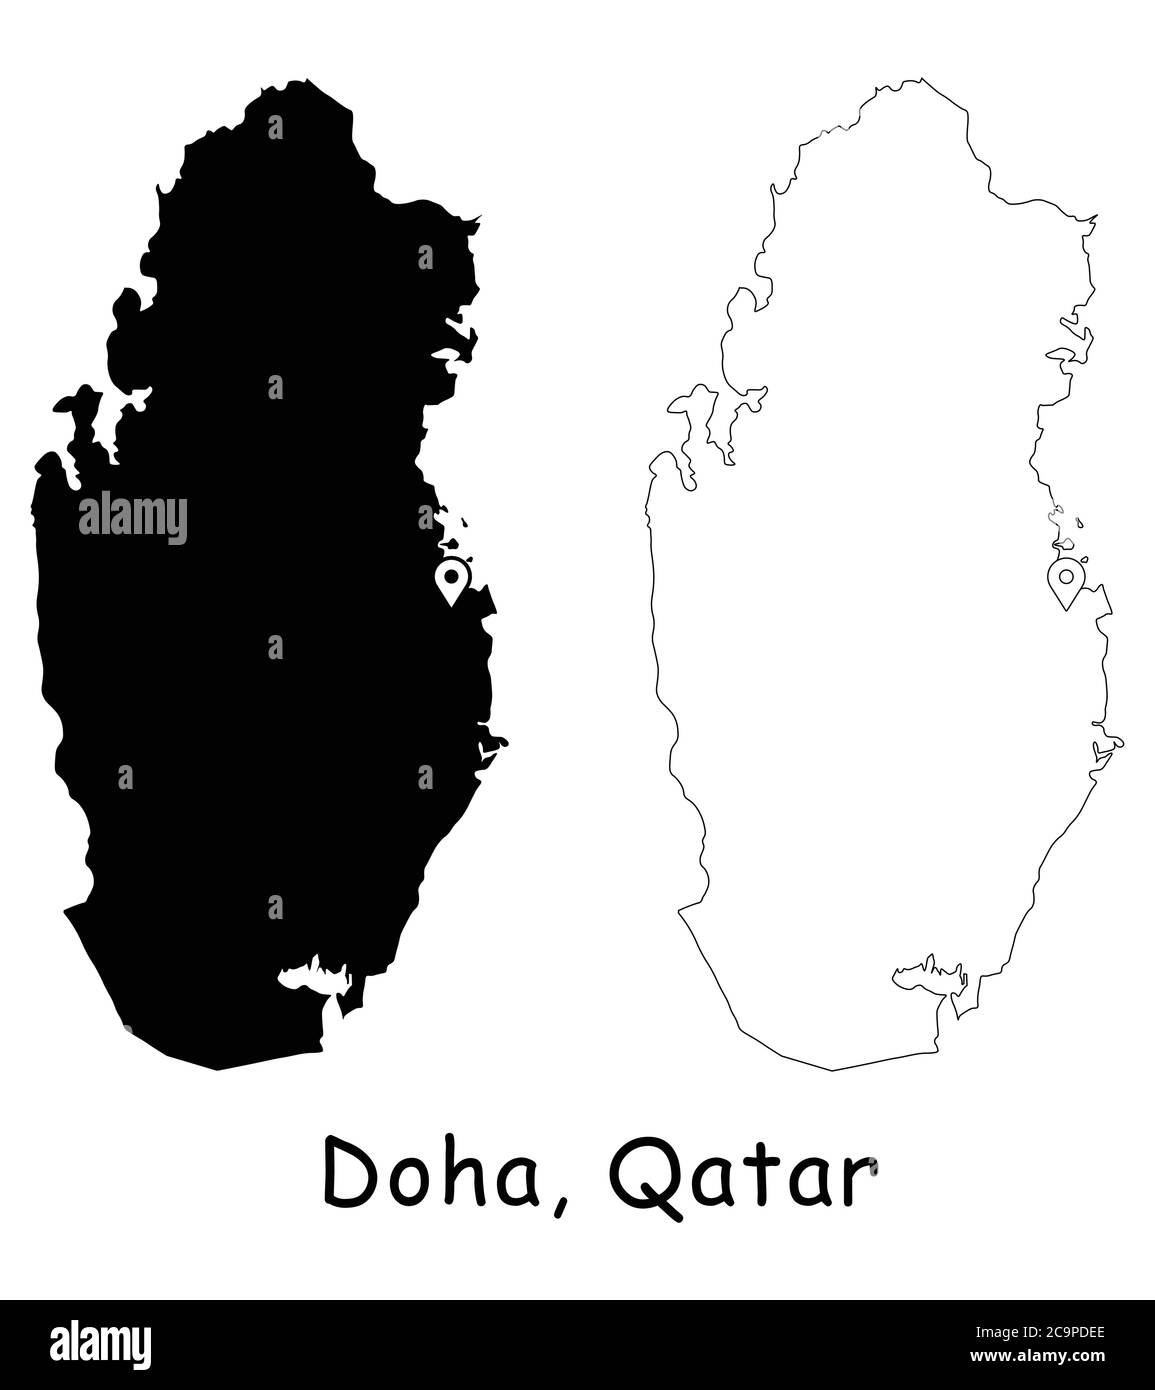 Doha, Qatar. Mappa dettagliata del Paese con il pin della posizione sulla città capitale. Silhouette nera e mappe di contorno isolate su sfondo bianco. Vettore EPS Illustrazione Vettoriale